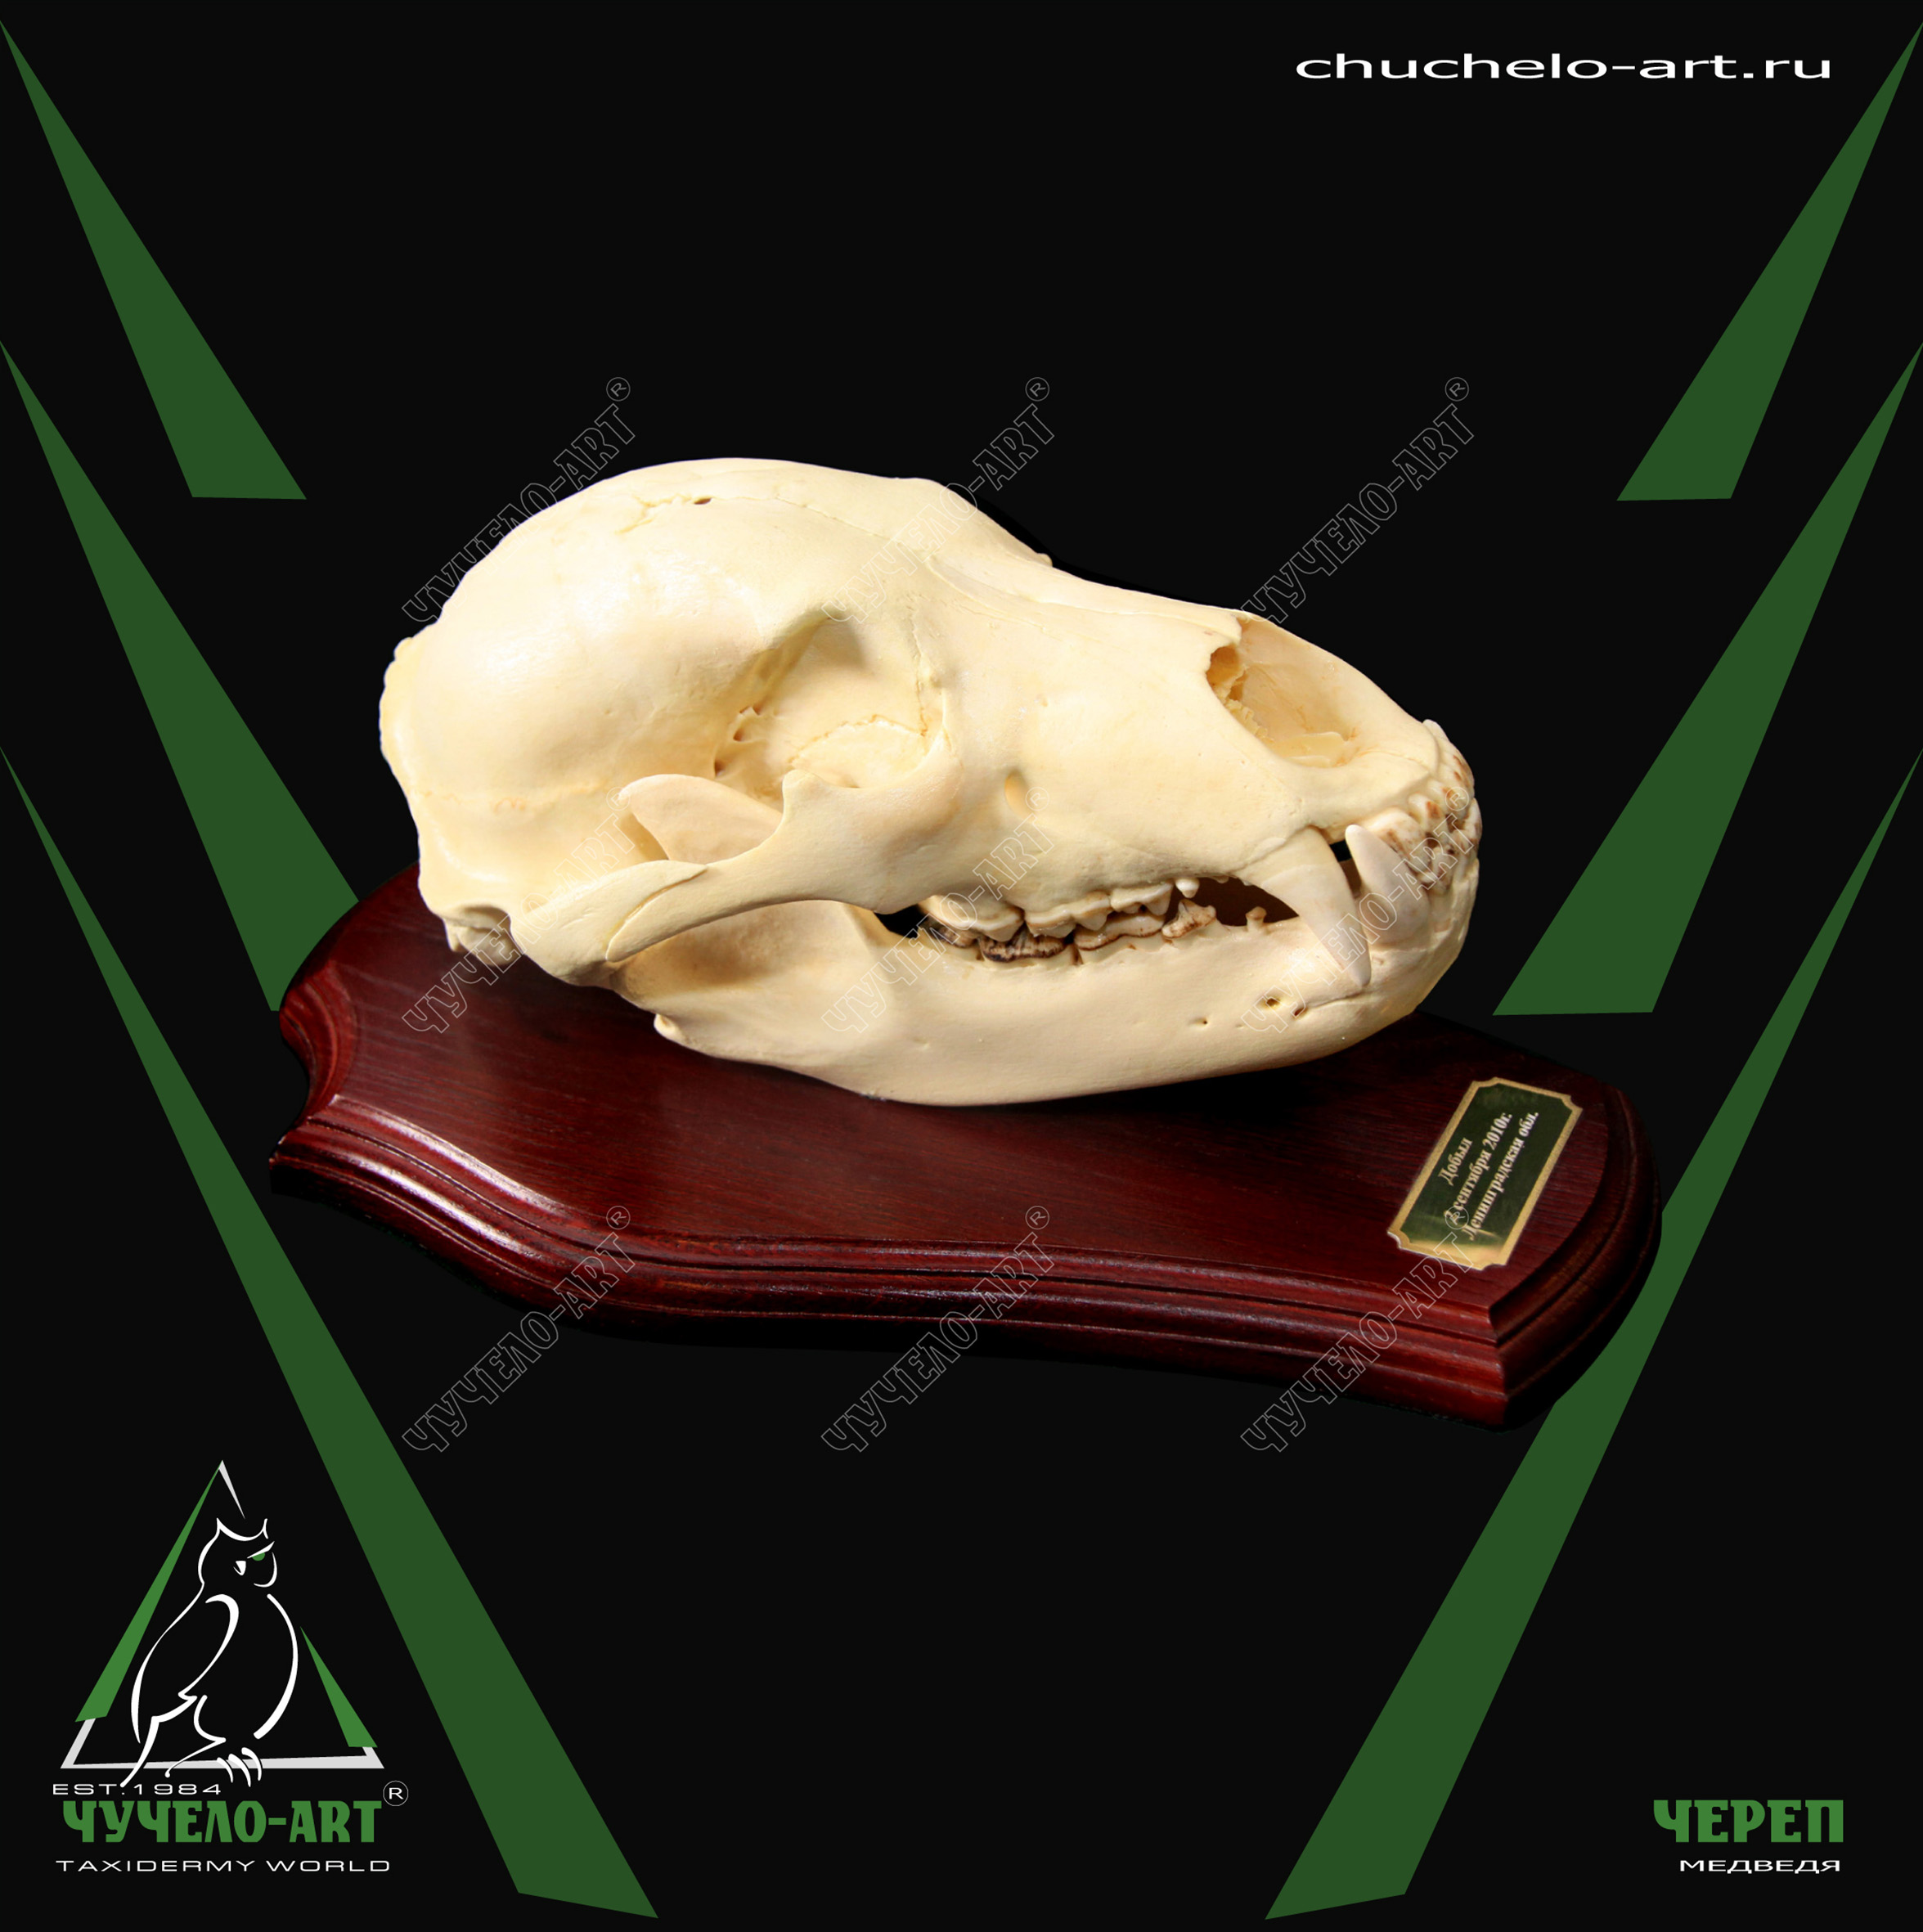 Череп медведя трофейный череп животного Чучело-Арт